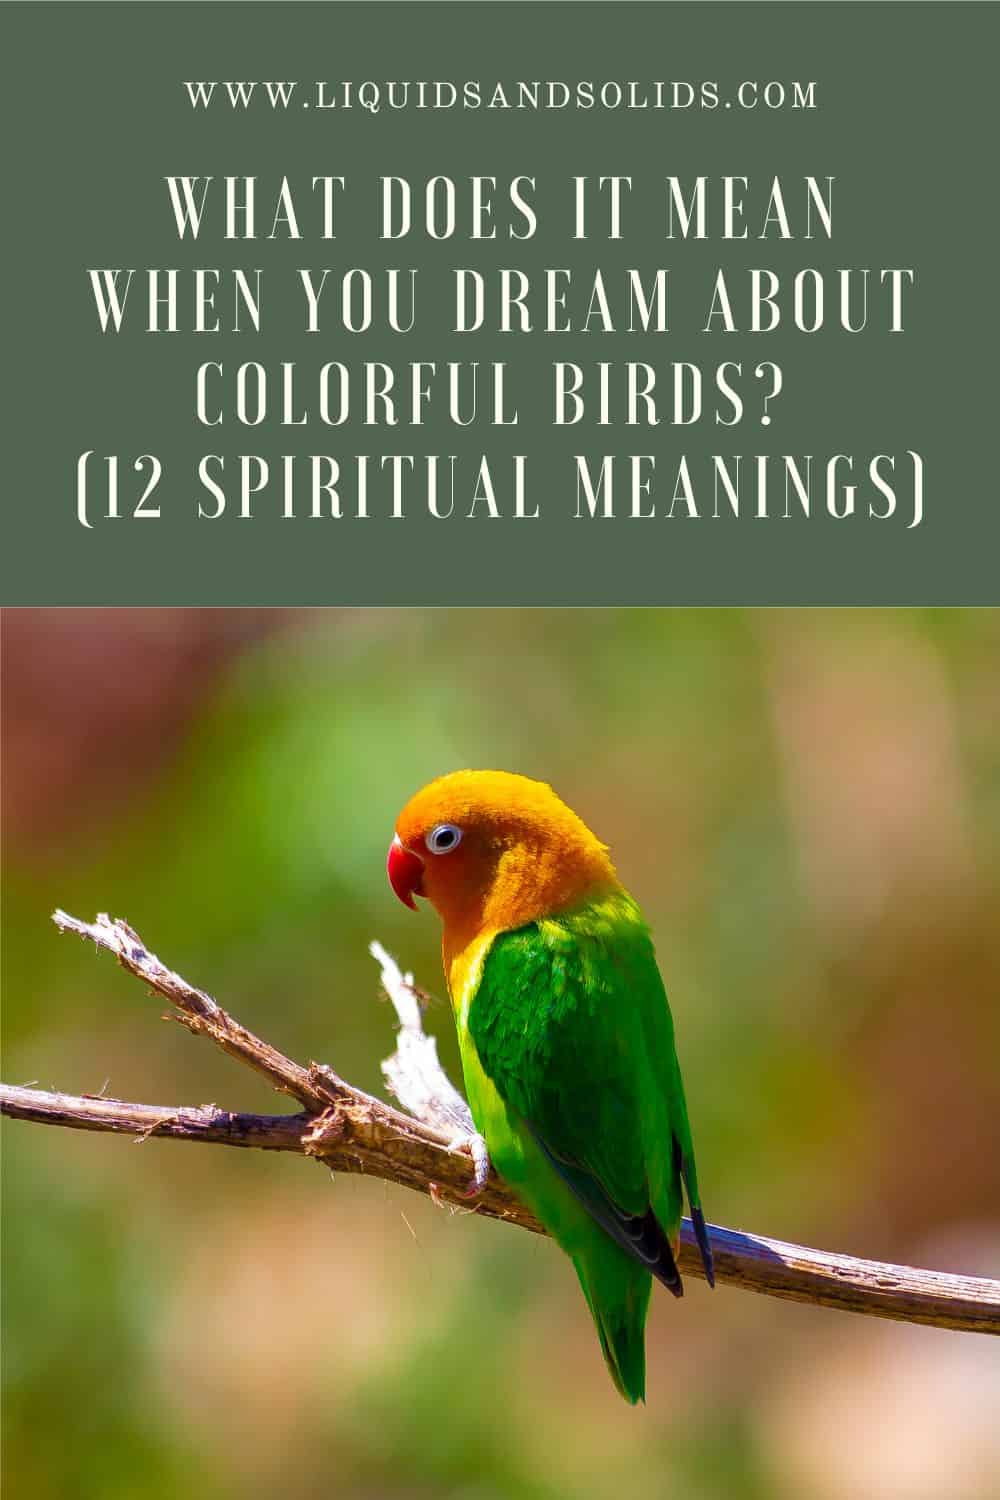  ماذا يعني عندما تحلم بالطيور الملونة؟ (12 معاني روحية)